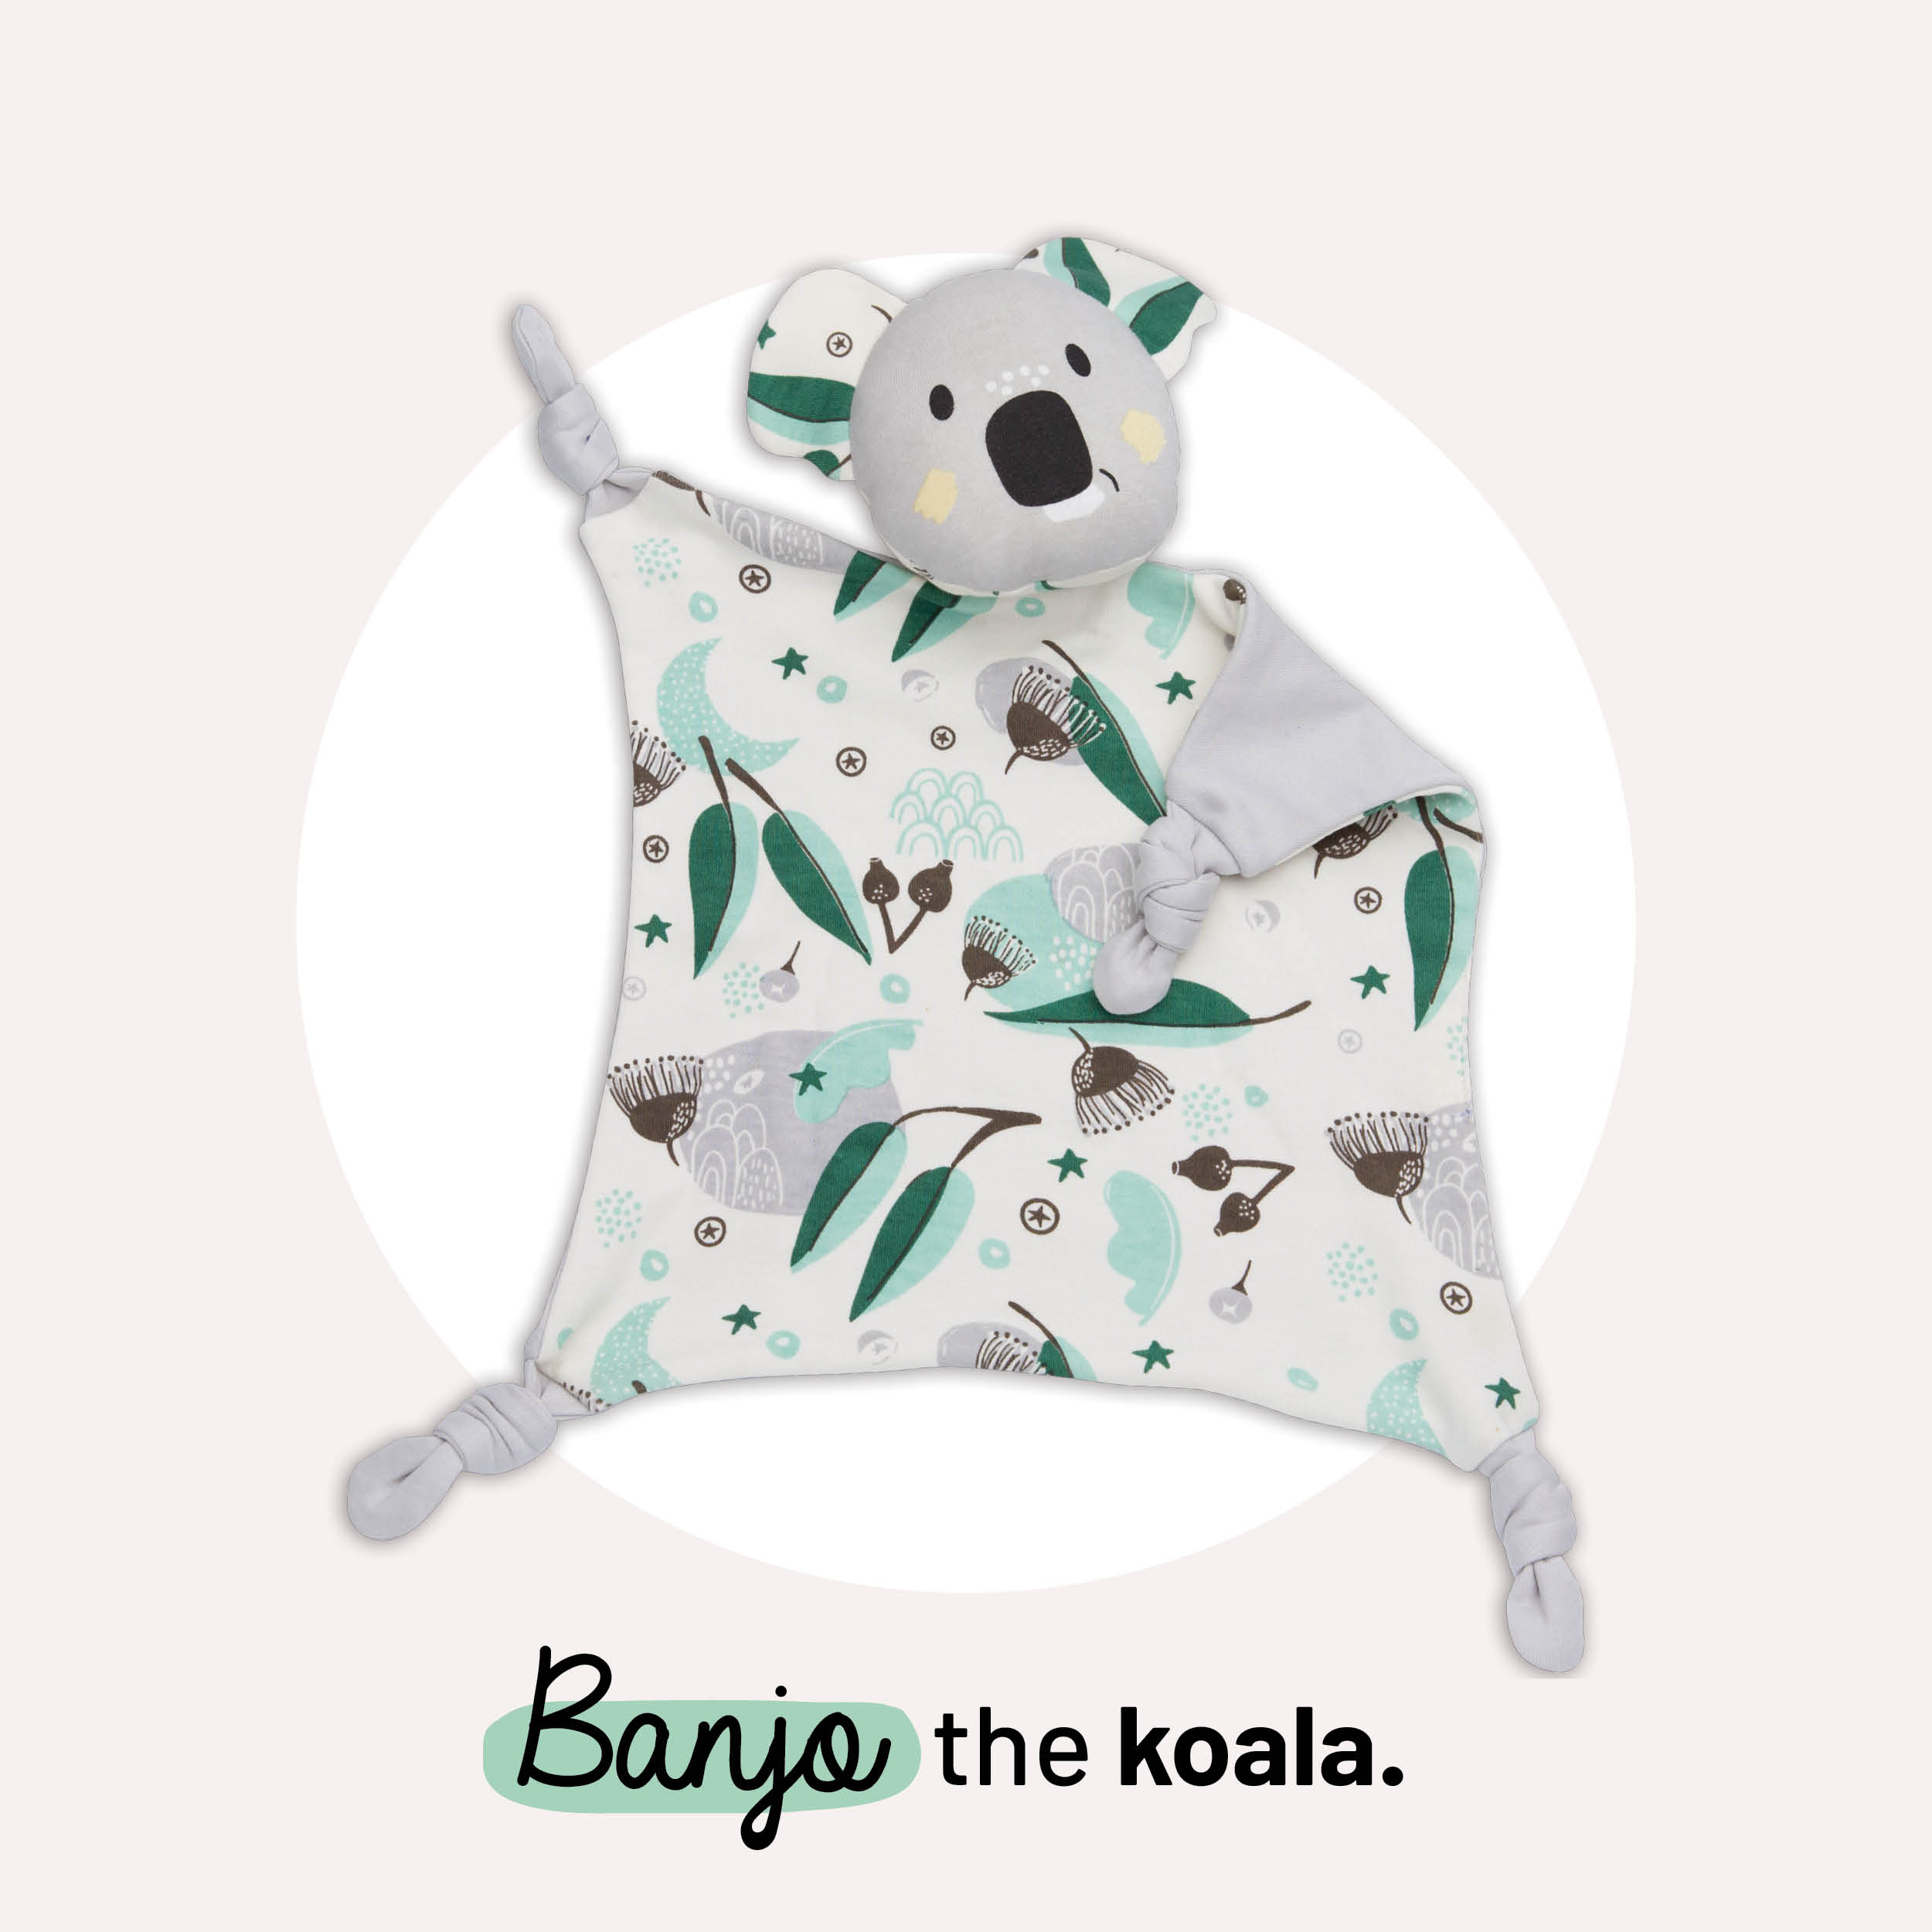 Banjo the koala